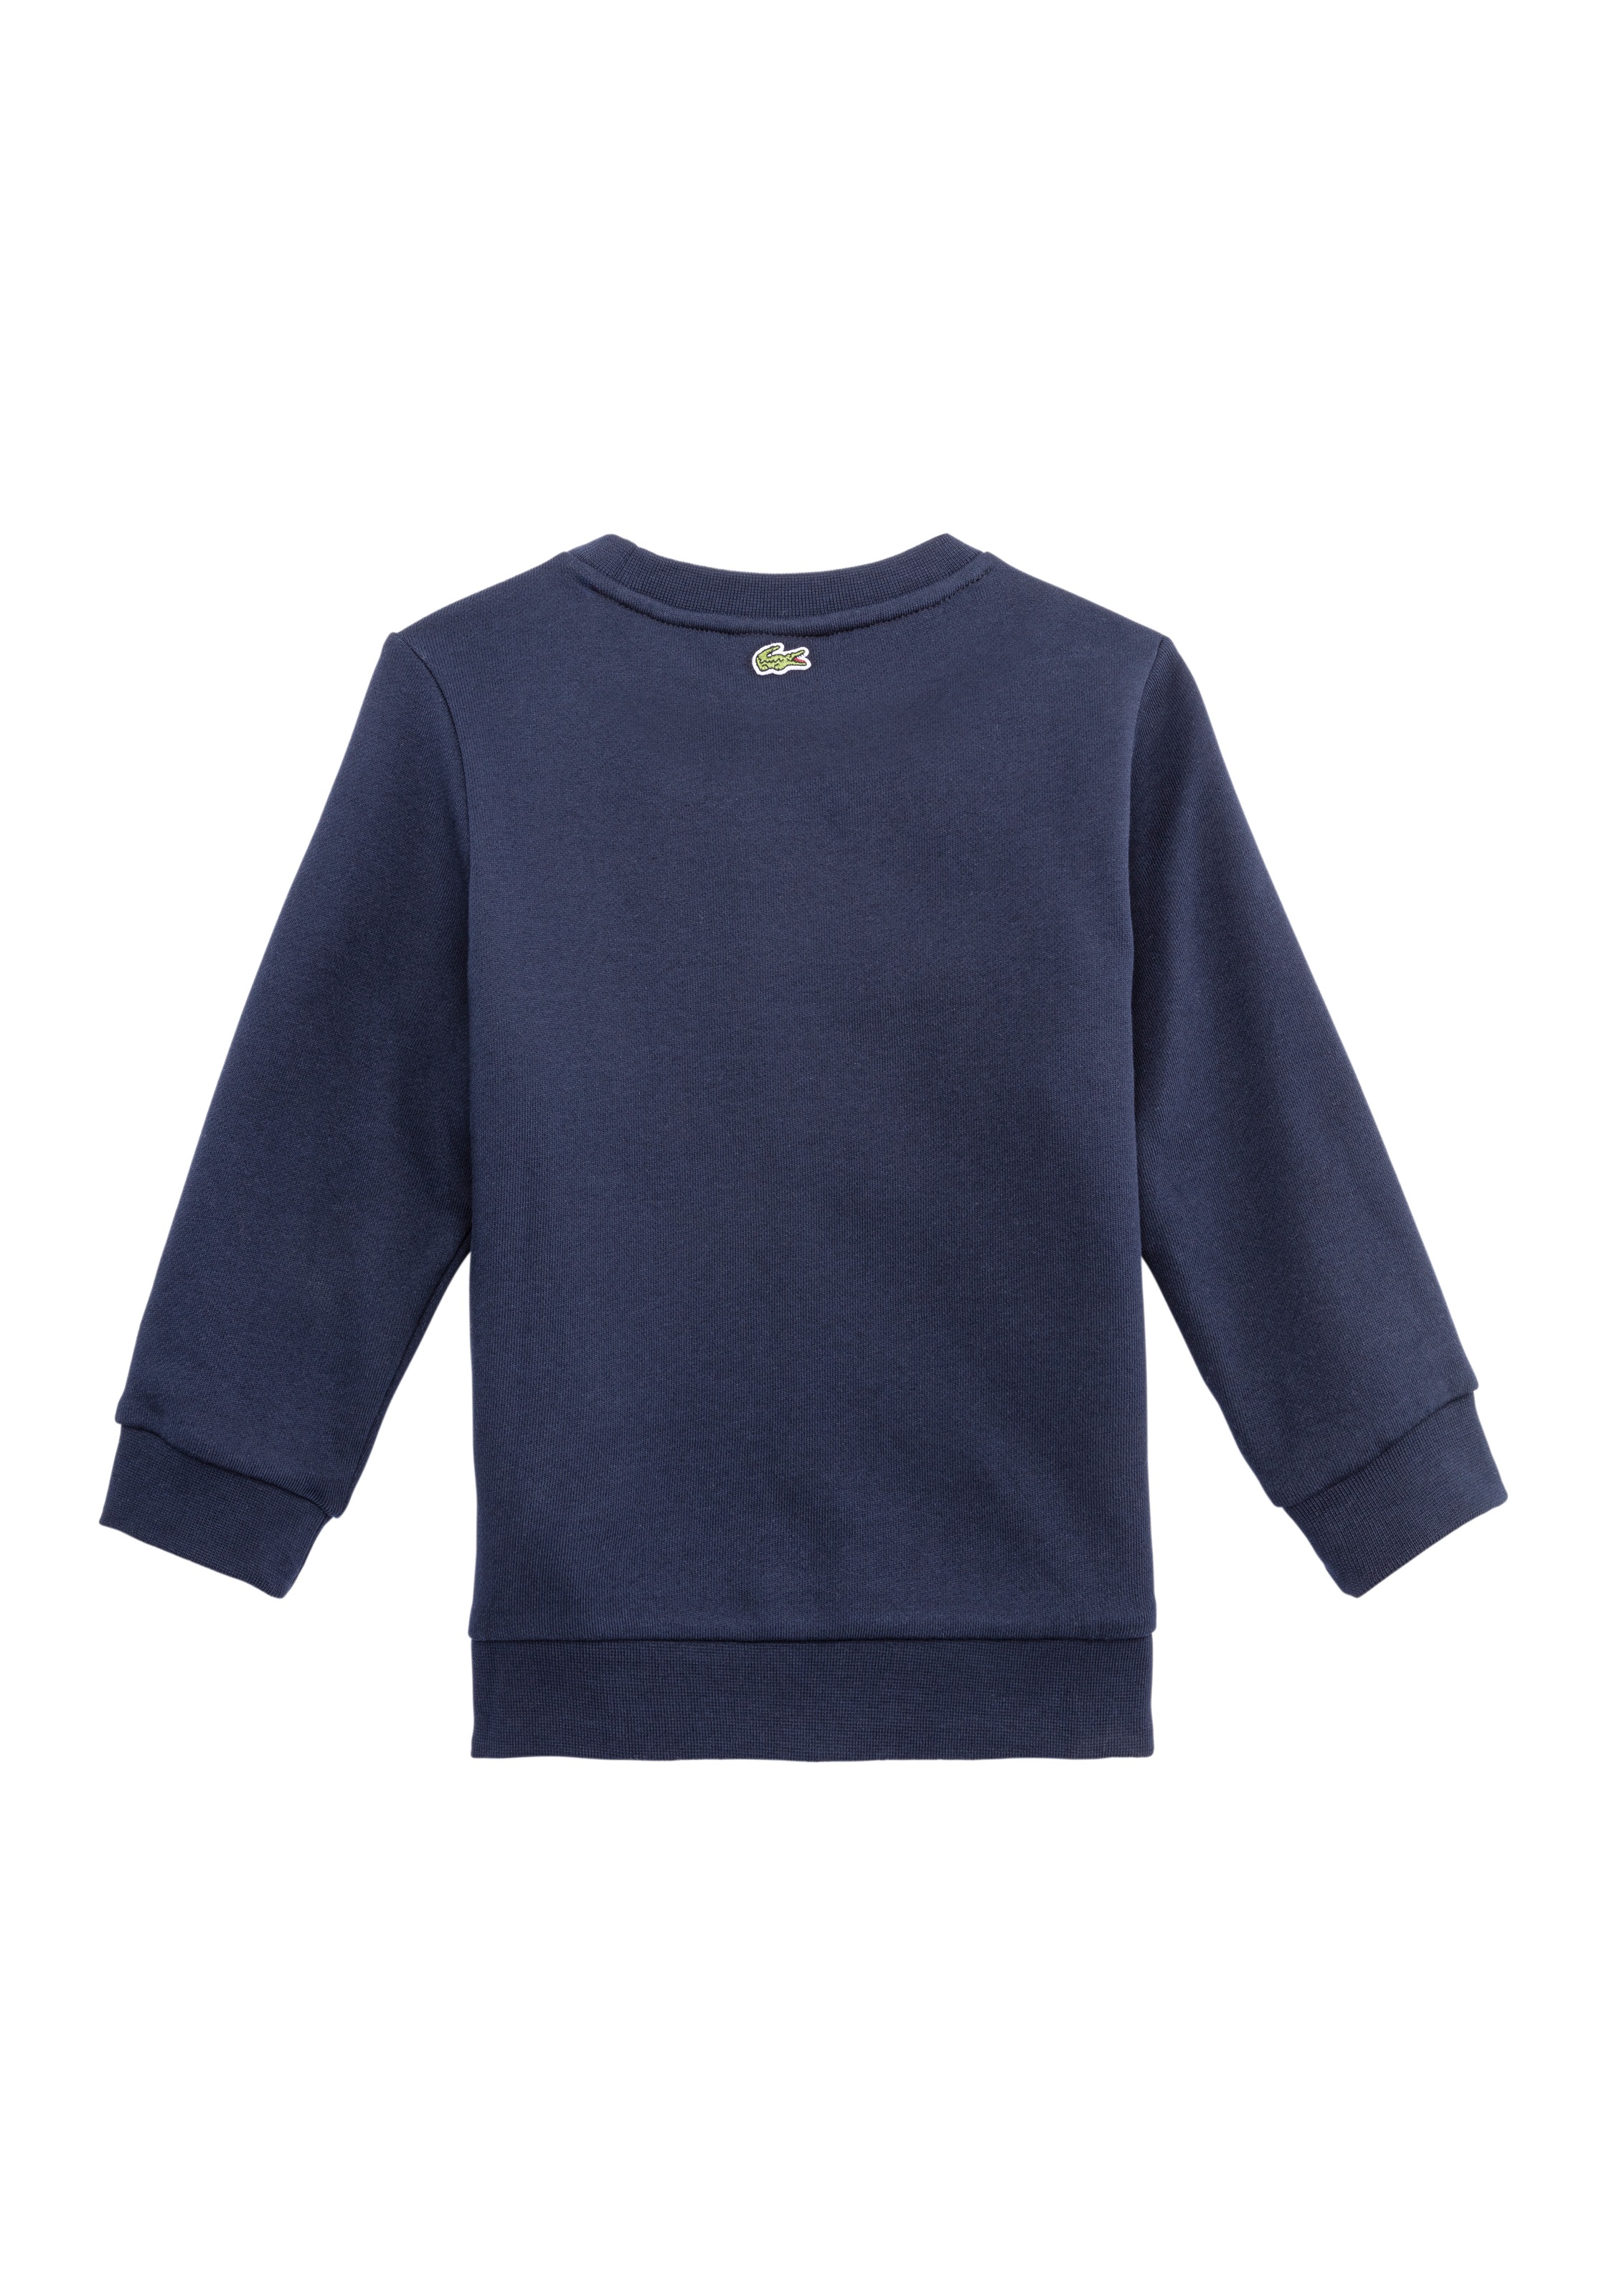 Lacoste Sweater, mit Lacoste Aufdruck